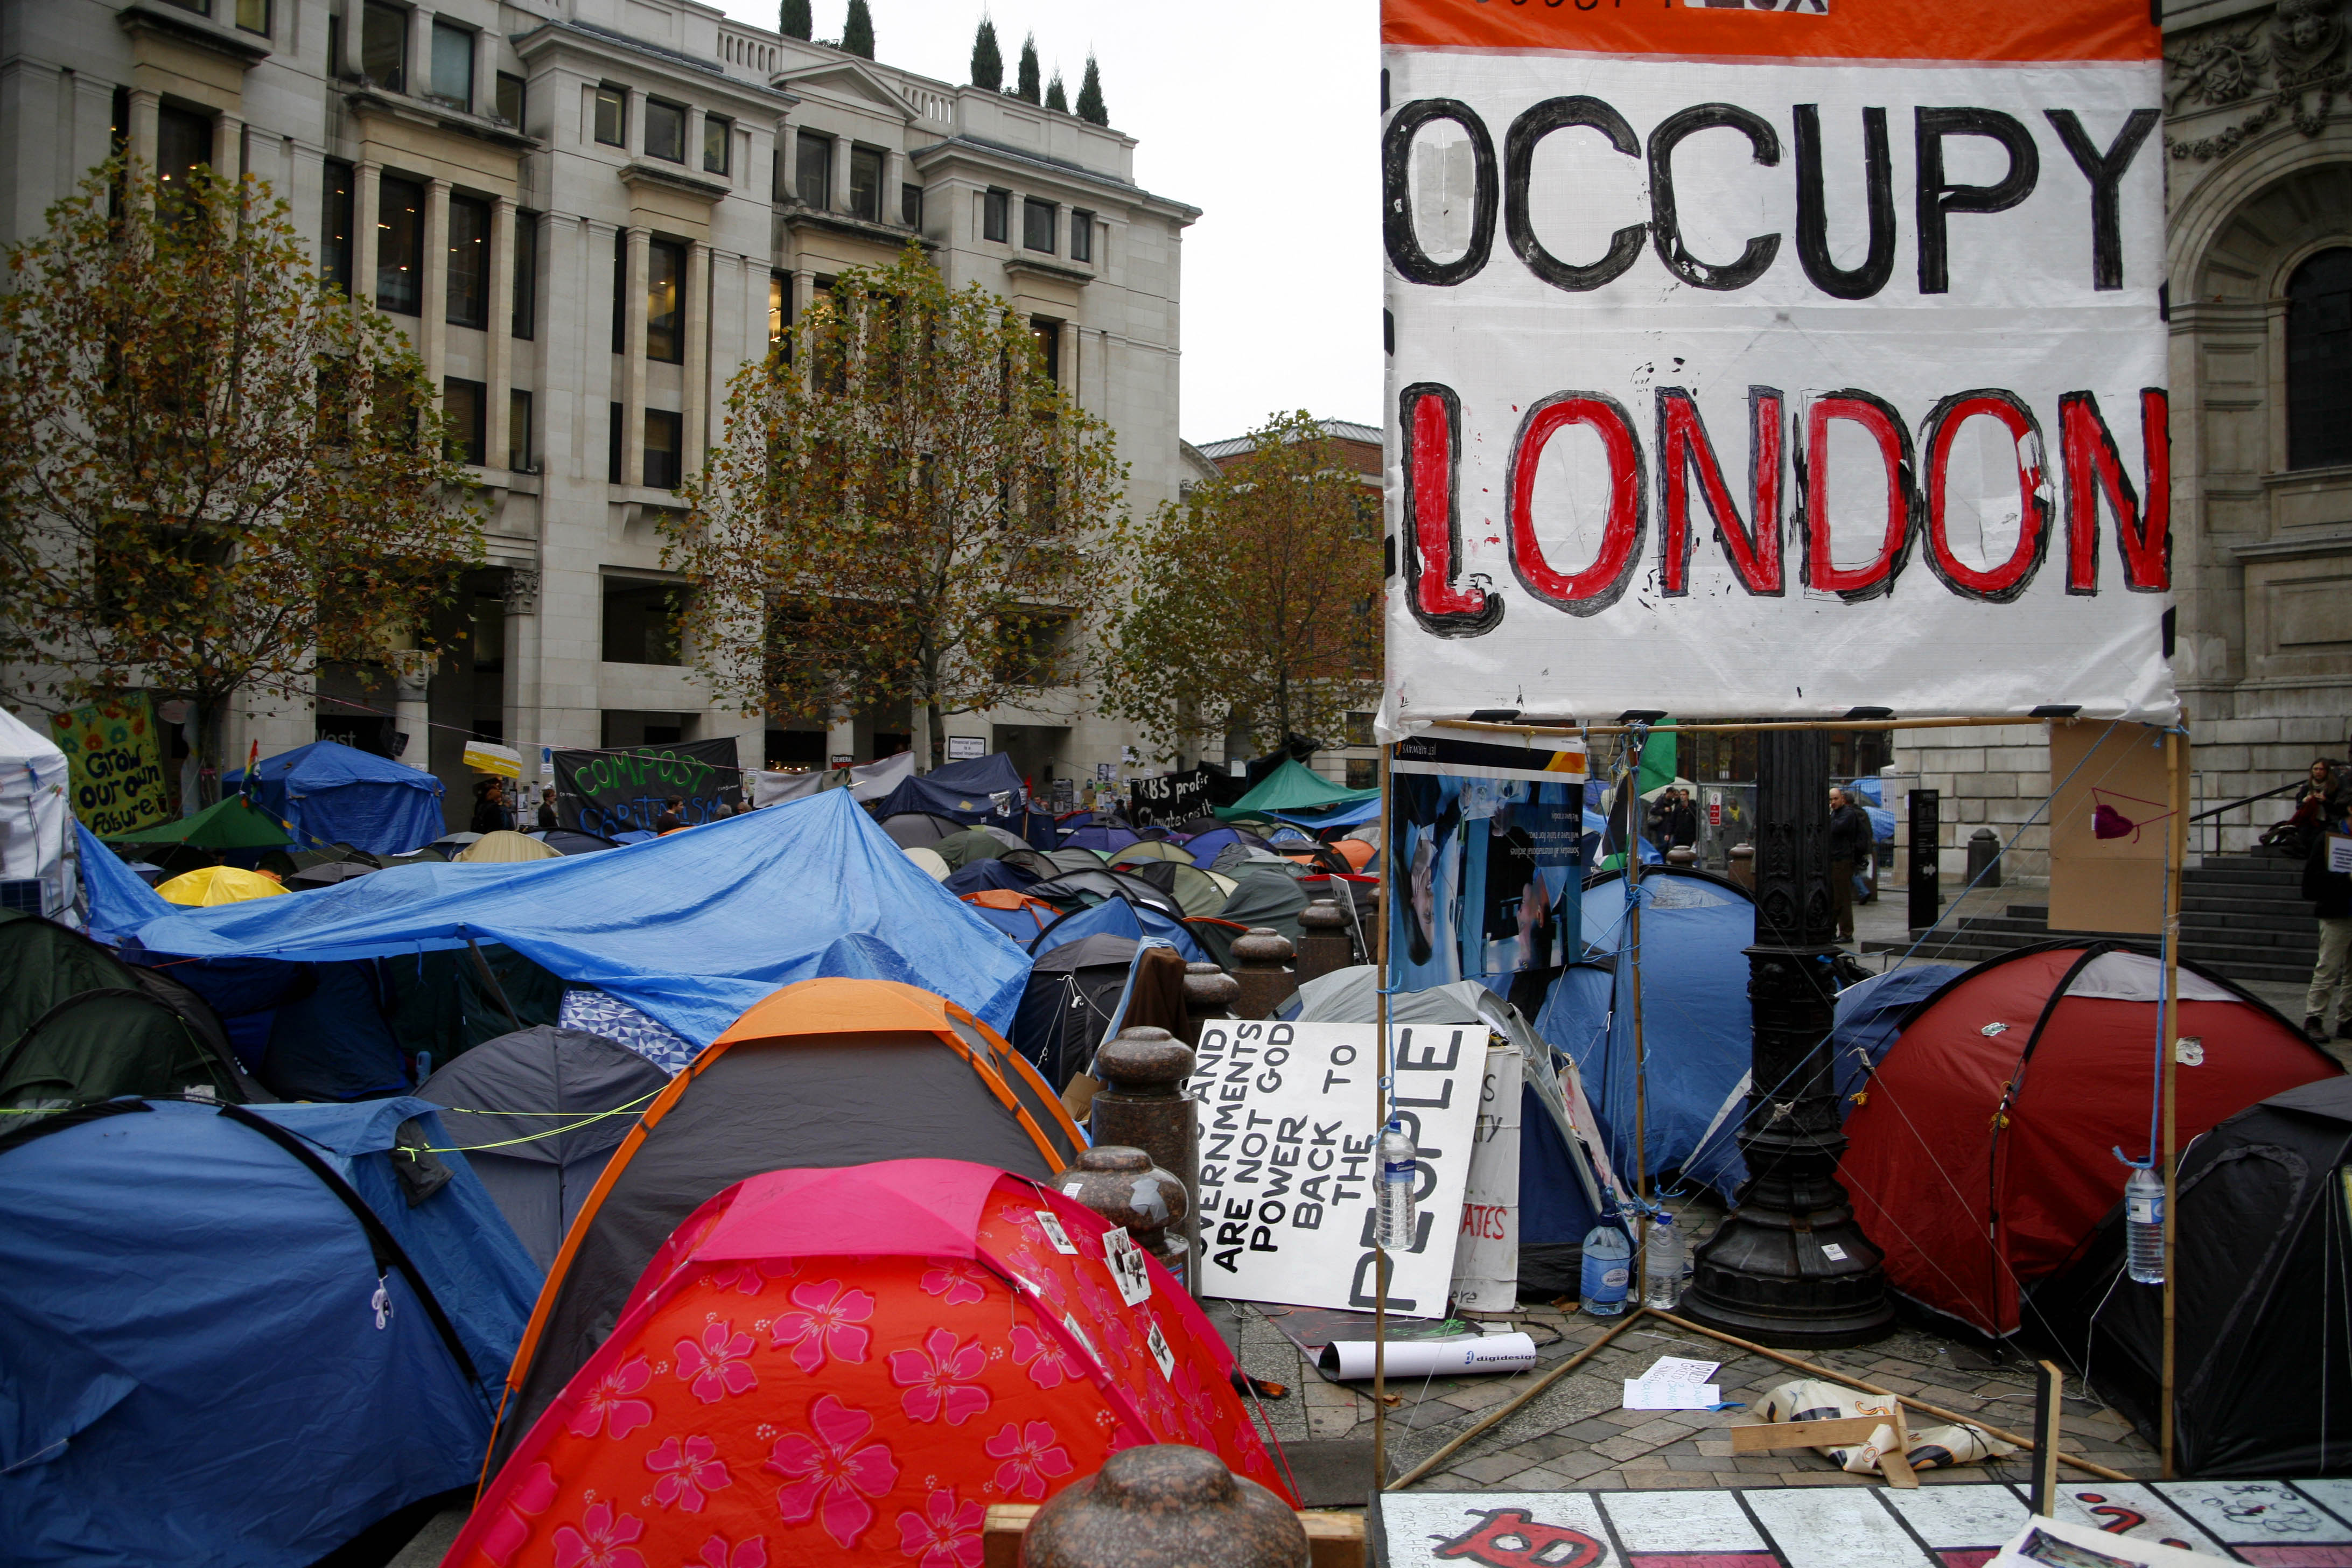 Τρομοκρατική οργάνωση το Occupy London, λέει η αστυνομία